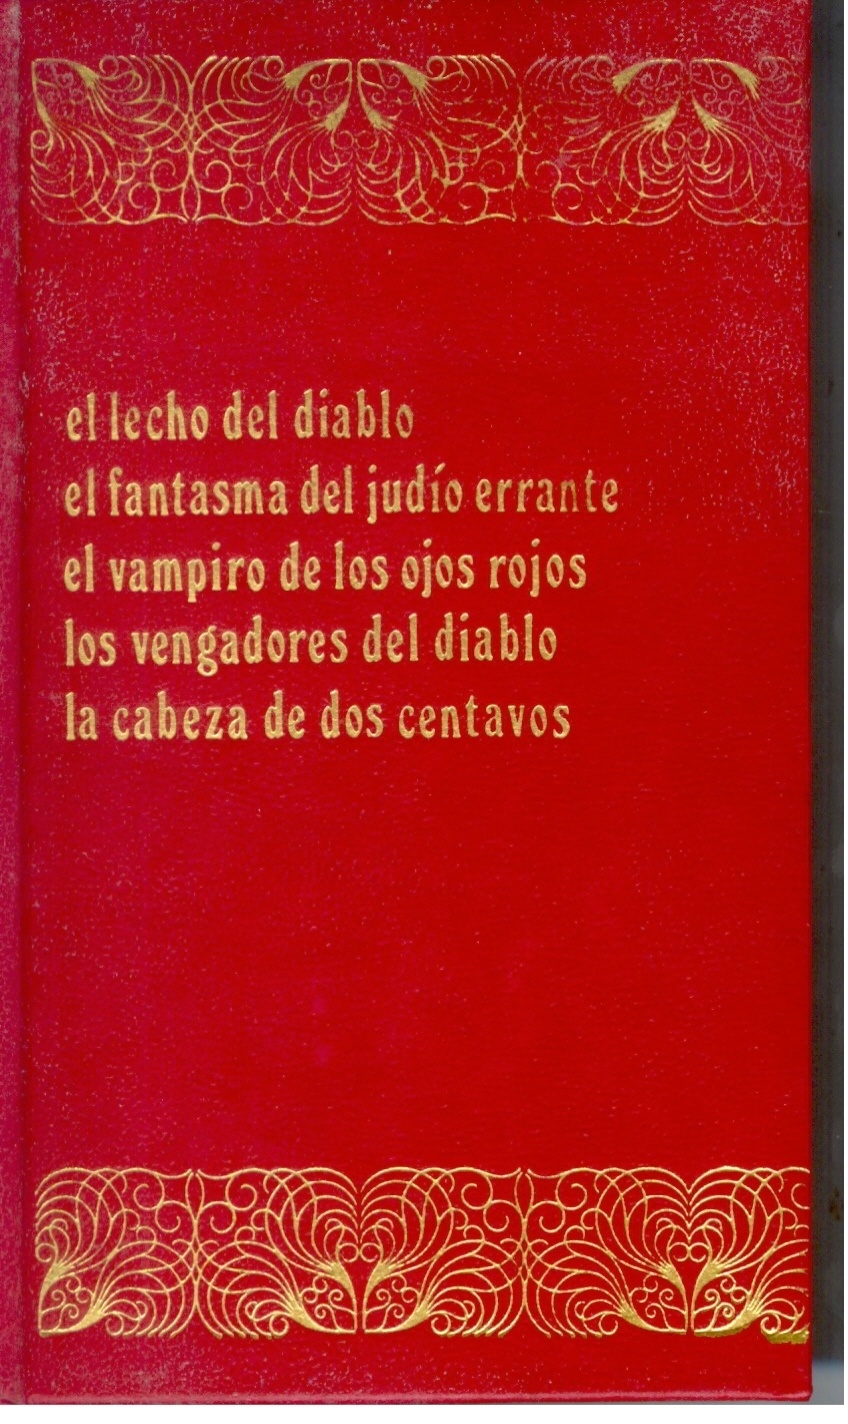 Harry Dickson IV "El lecho del diablo/El fantasma del judío errante/El vampiro de los ojos rojos/Los vengadores del diablo/La cabeza de dos centavos"